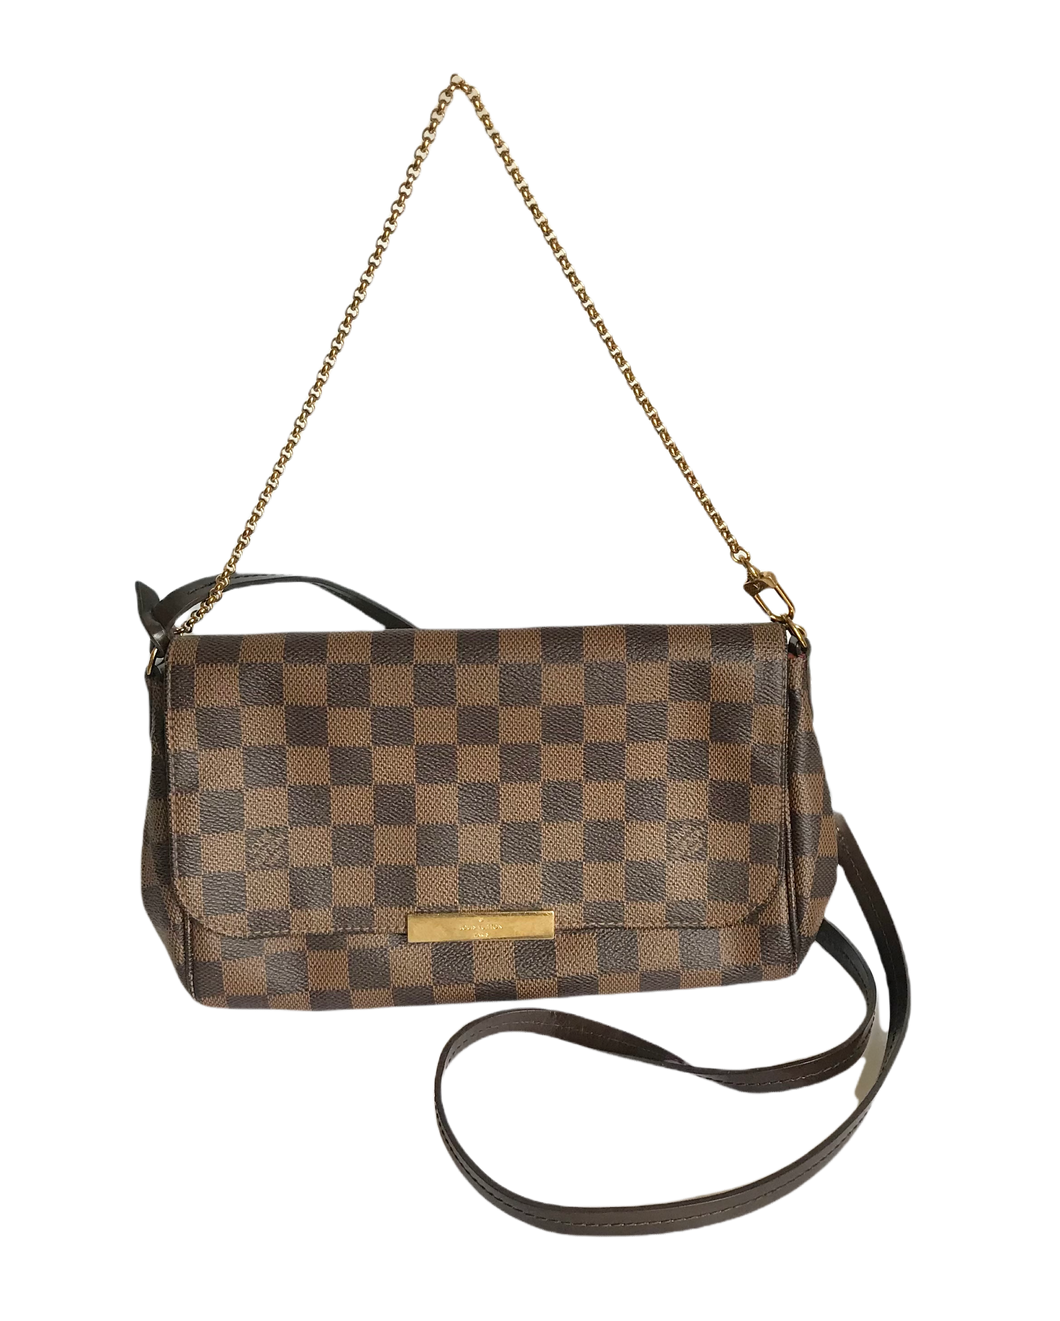 Pre-Owned Louis Vuitton Damier Shoulder Bag 